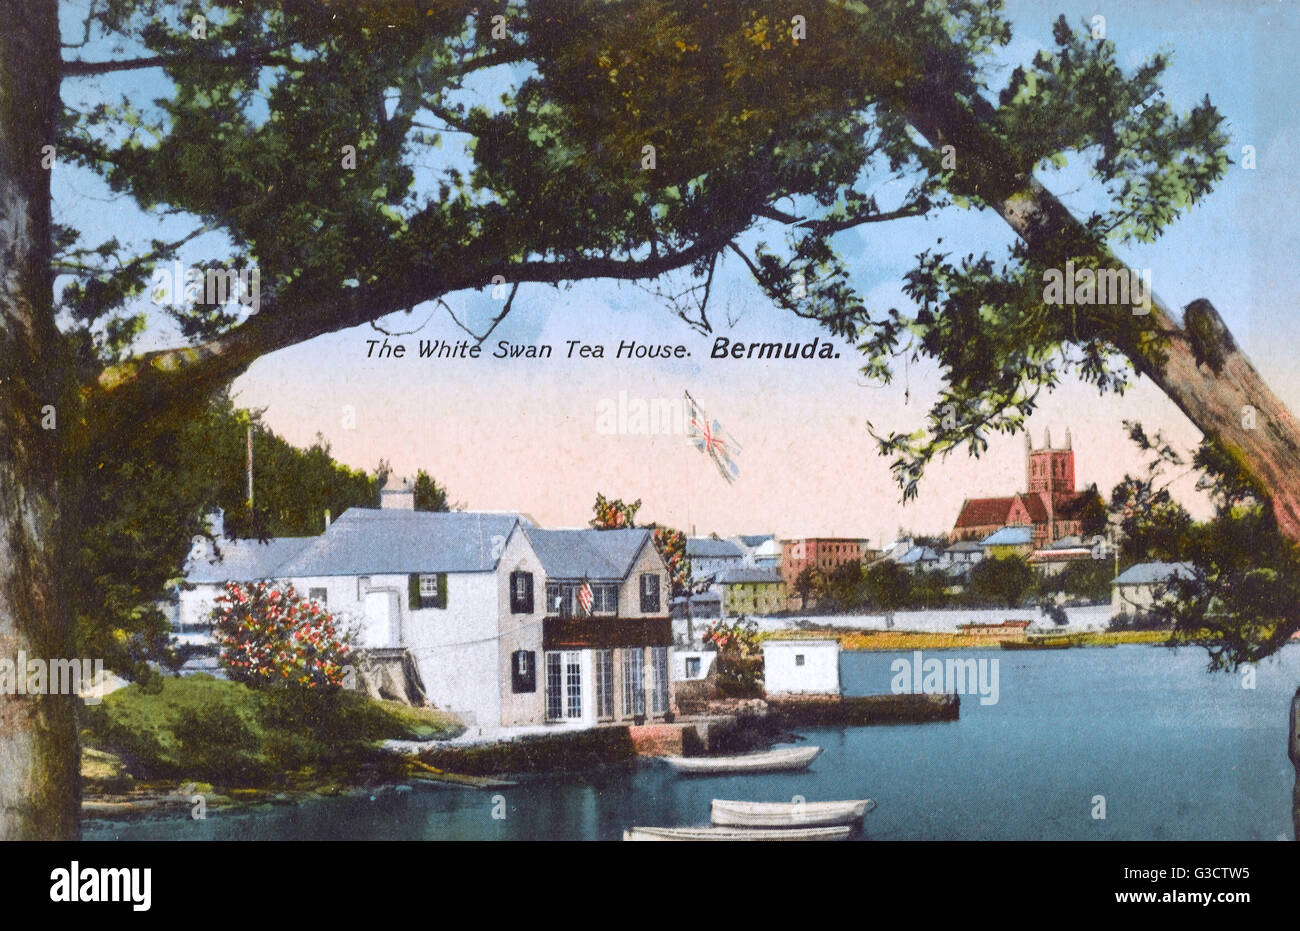 The White Swan Tea House, Hamilton, Bermuda Stock Photo